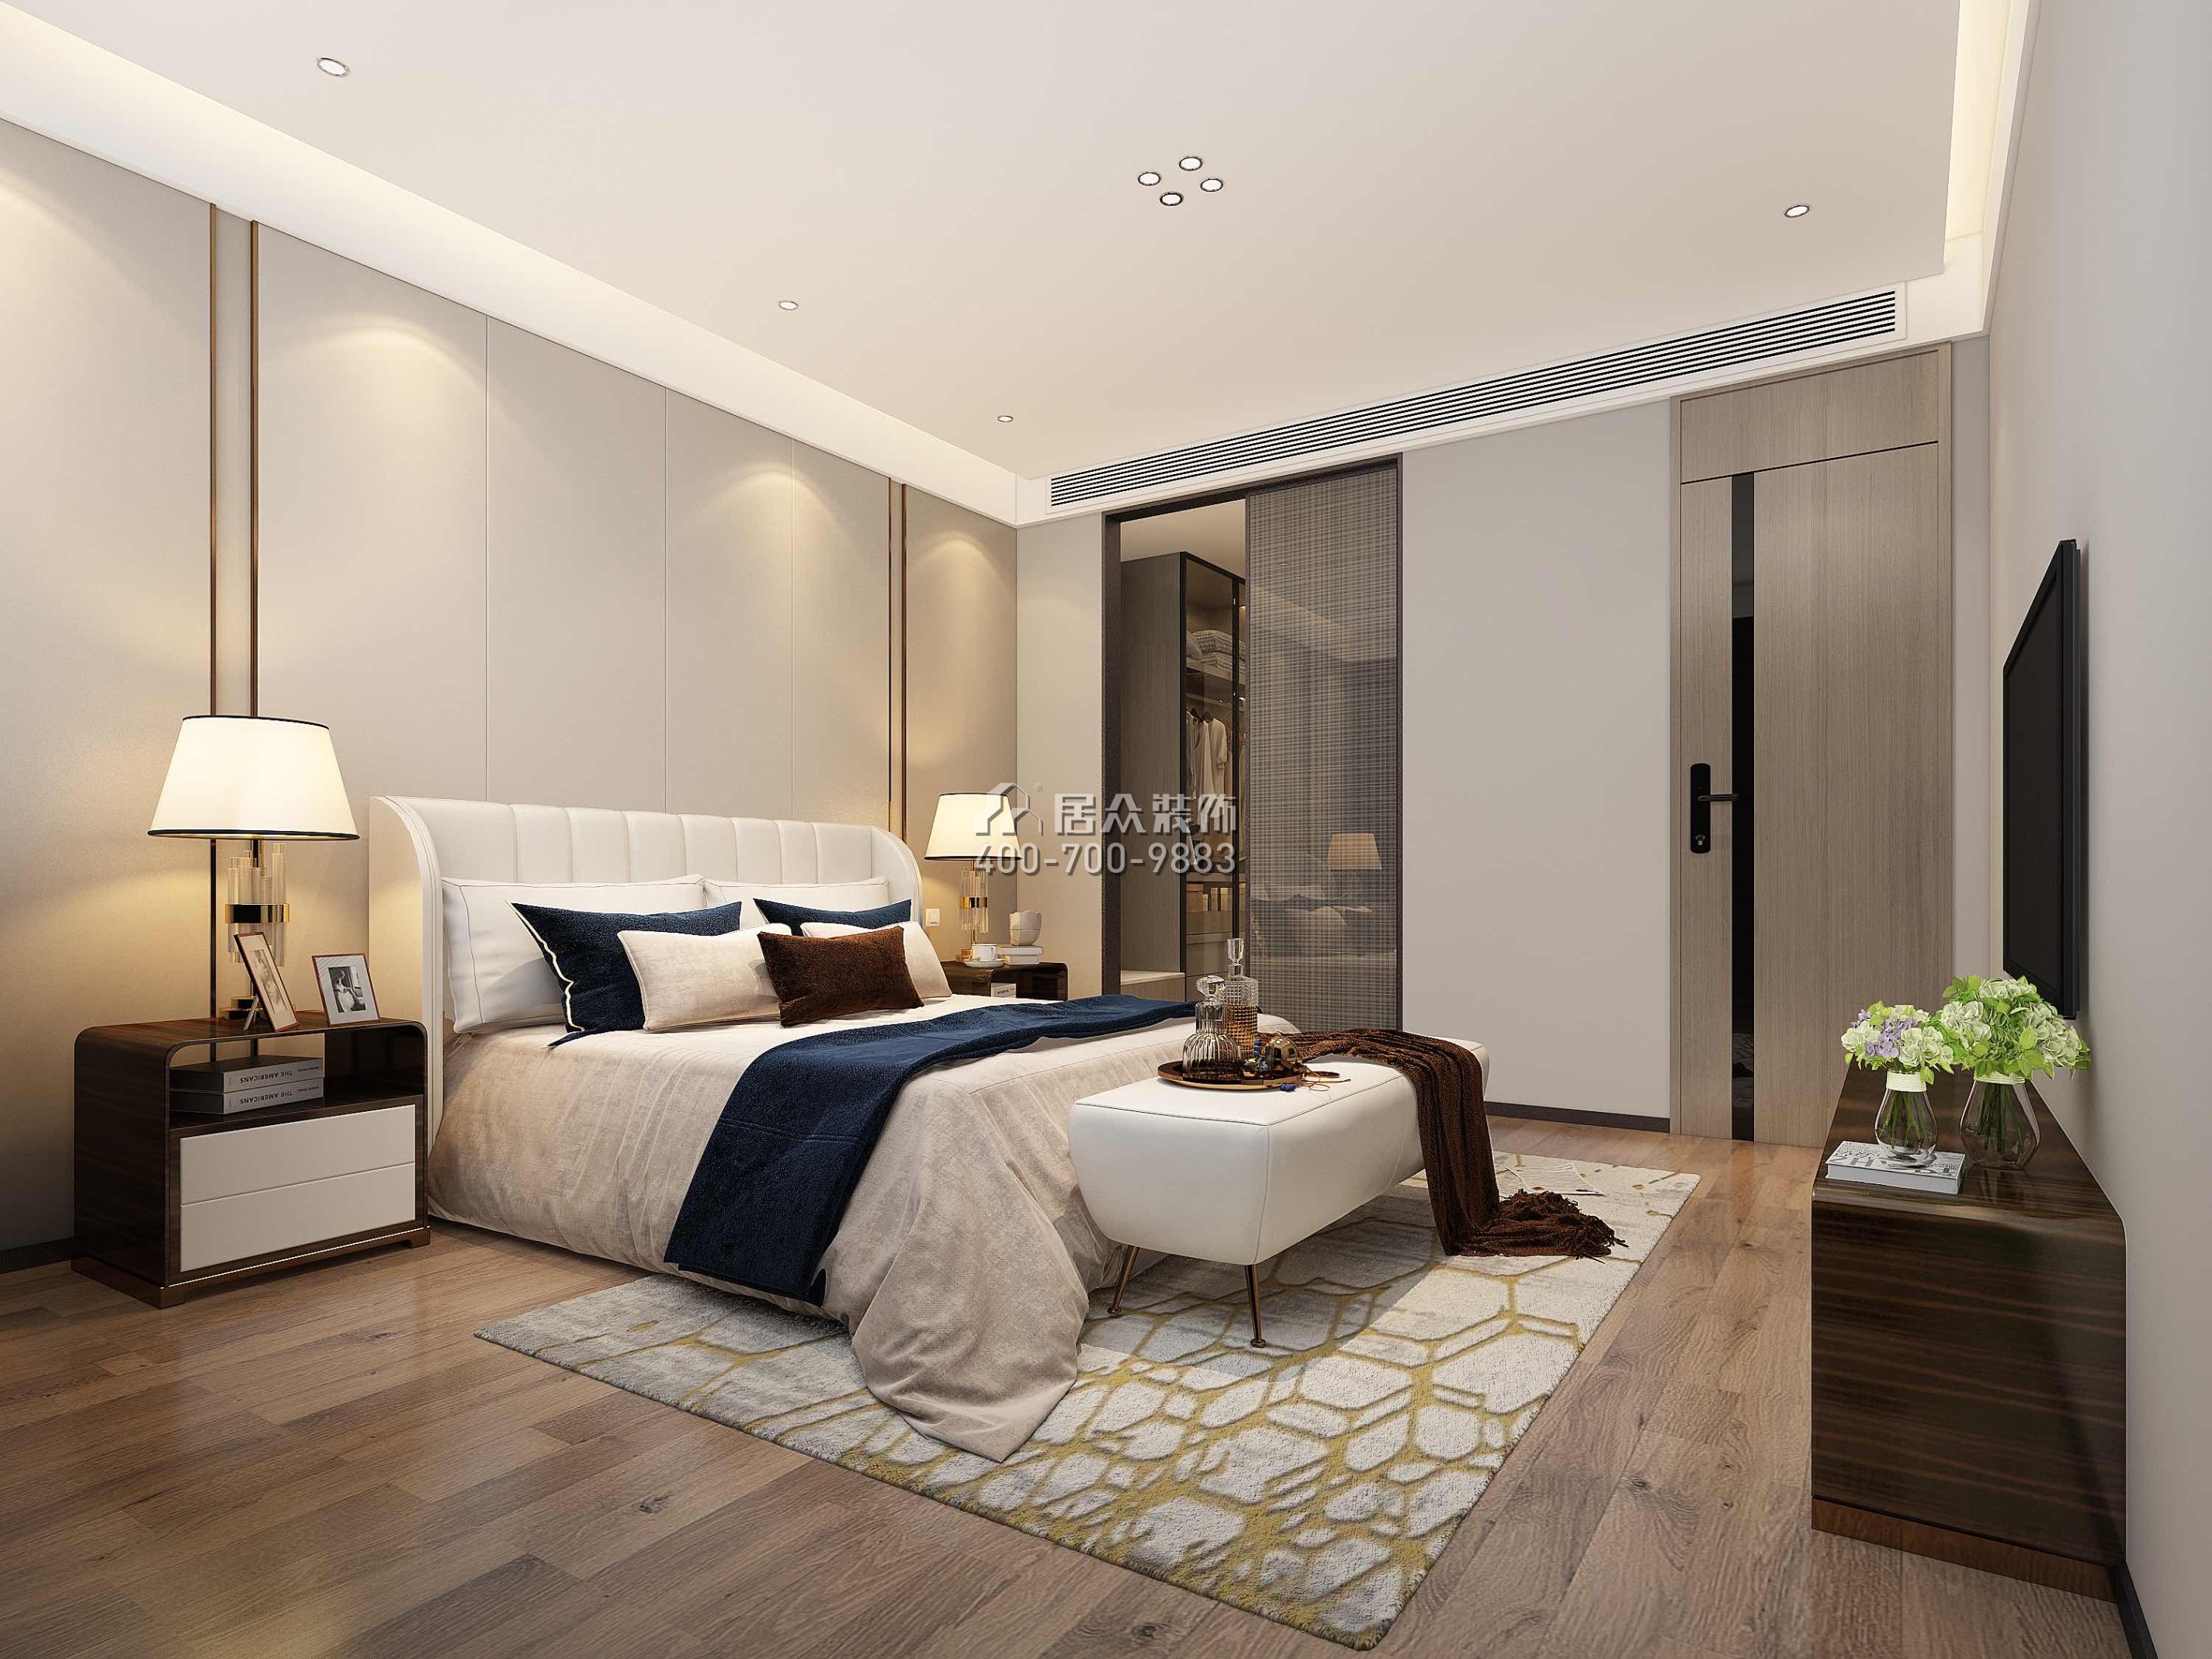 香山美墅五期170平方米现代简约风格平层户型卧室装修效果图